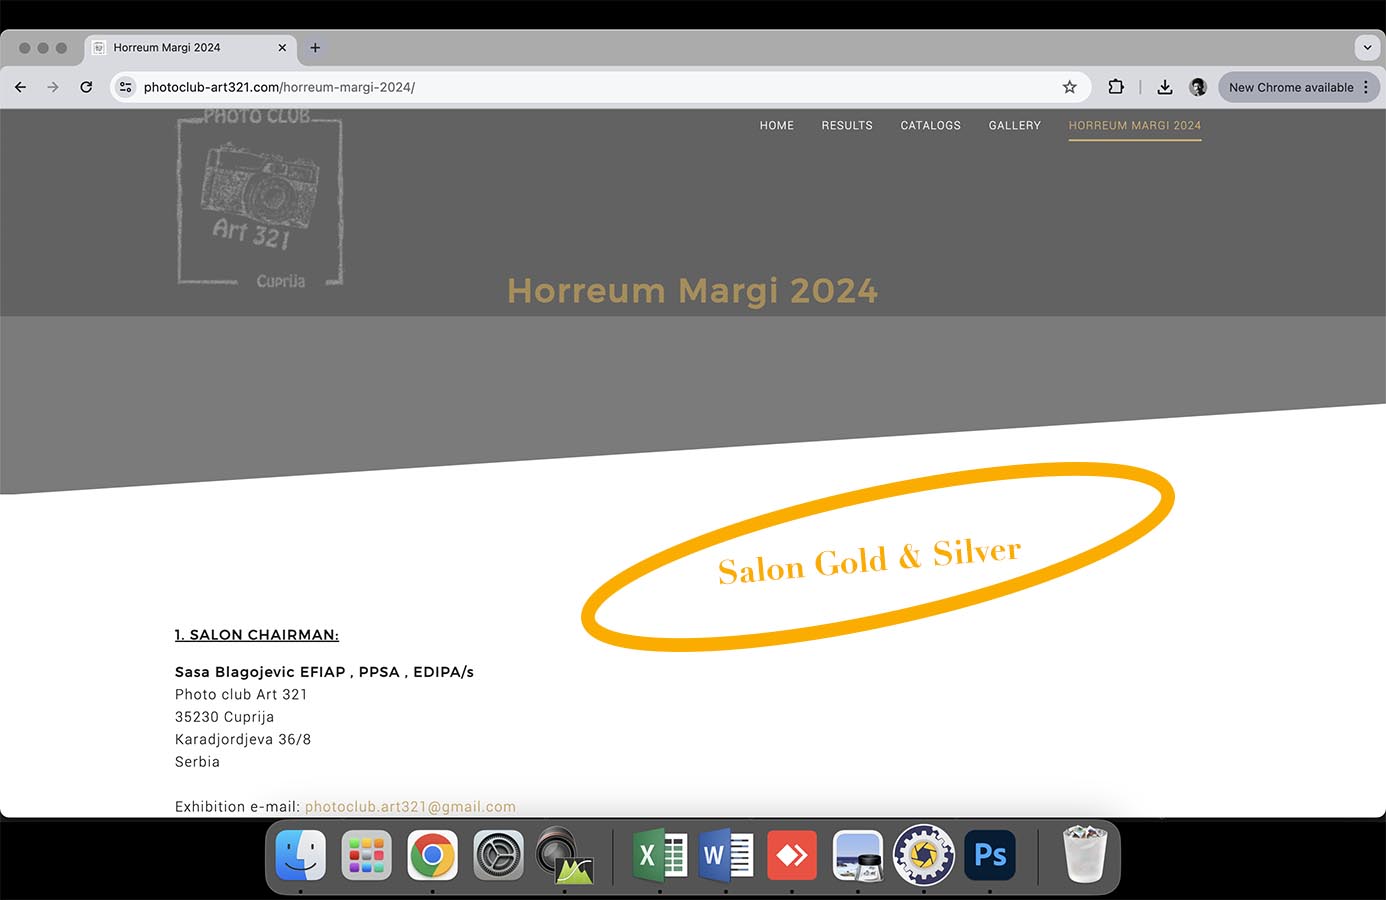 Horreum Margi 2024